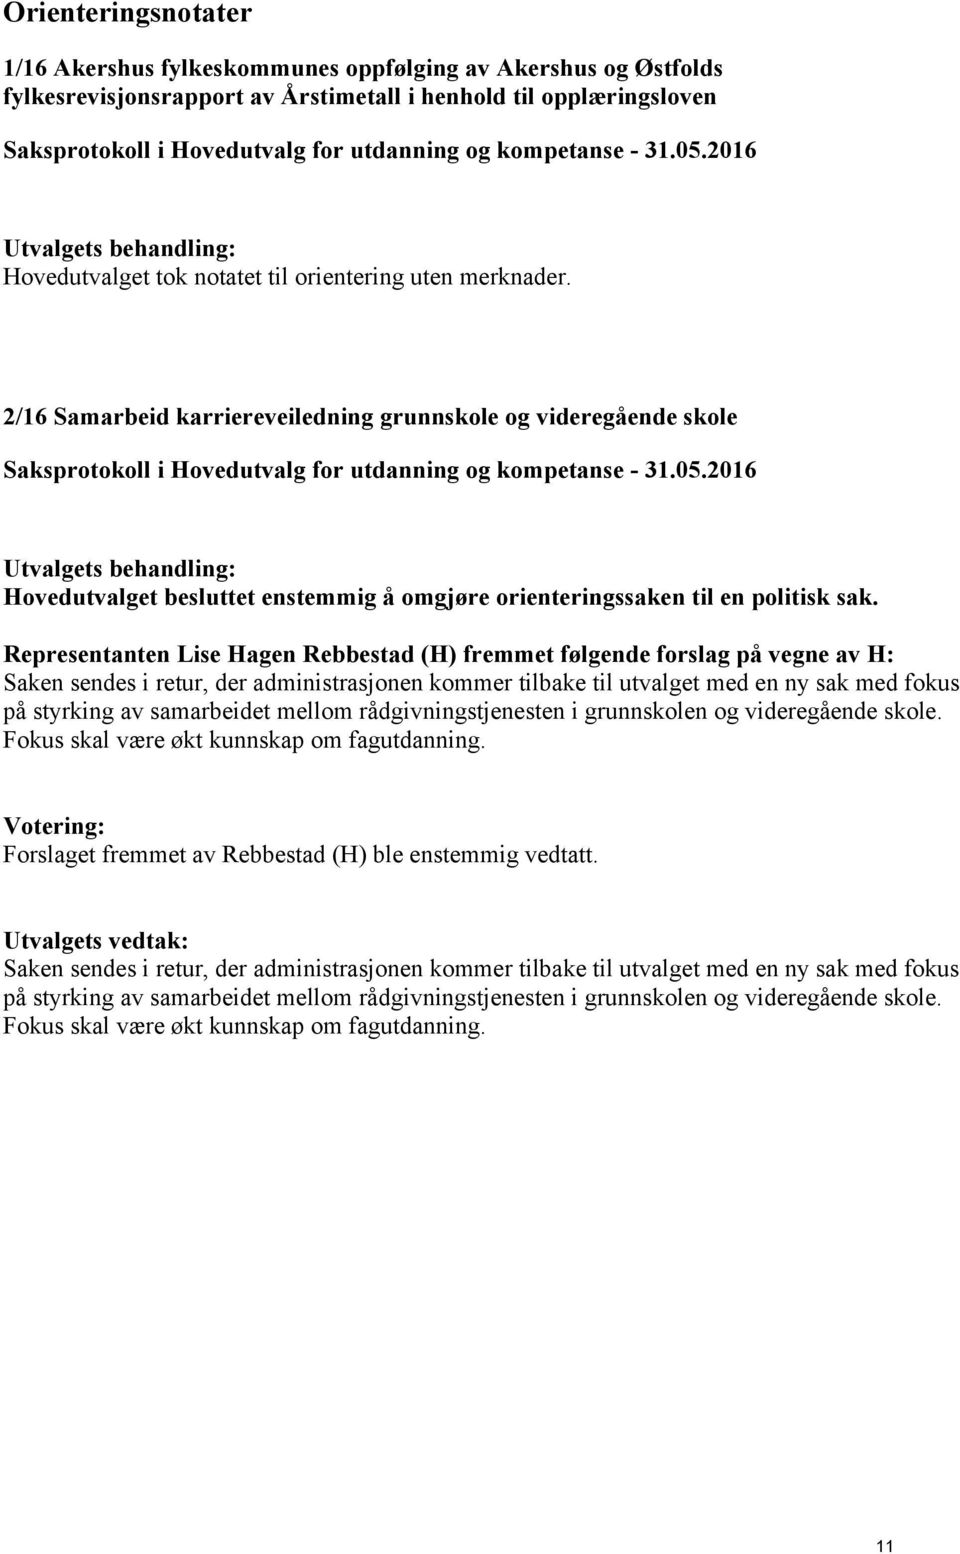 Representanten Lise Hagen Rebbestad (H) fremmet følgende forslag på vegne av H: Saken sendes i retur, der administrasjonen kommer tilbake til utvalget med en ny sak med fokus på styrking av